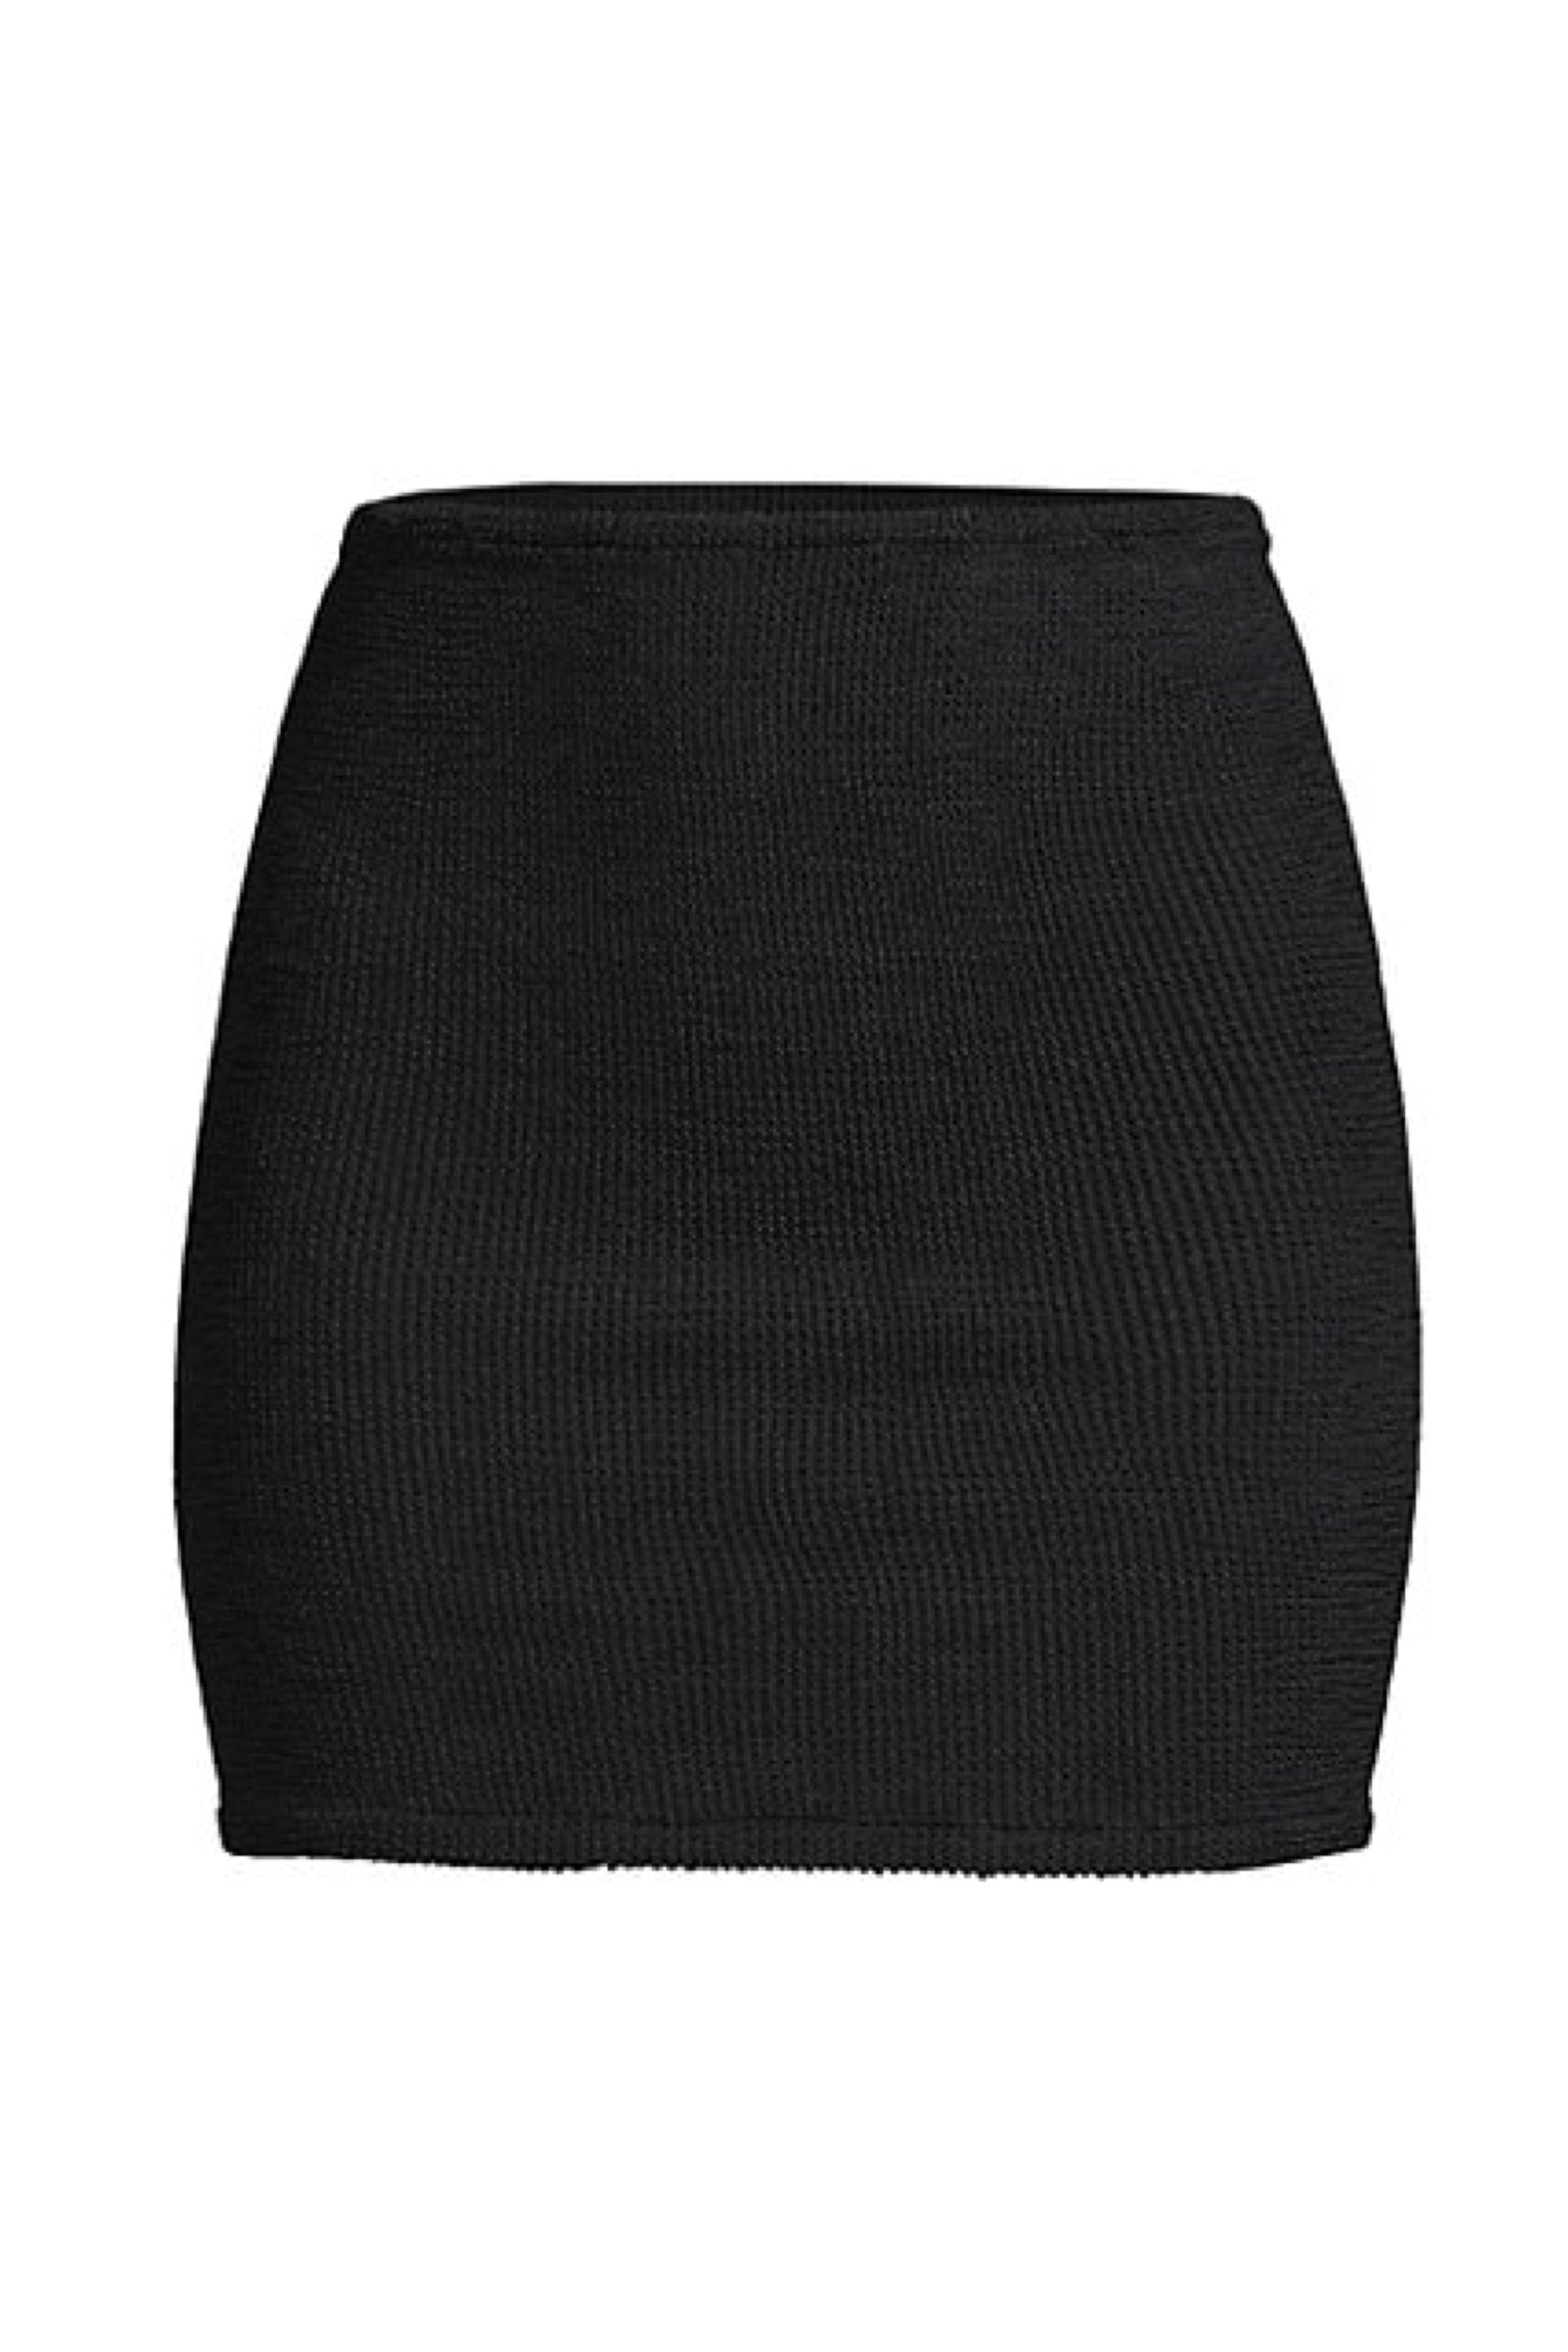 Black Mini Skirt | Prism Boutique | Reviews on Judge.me